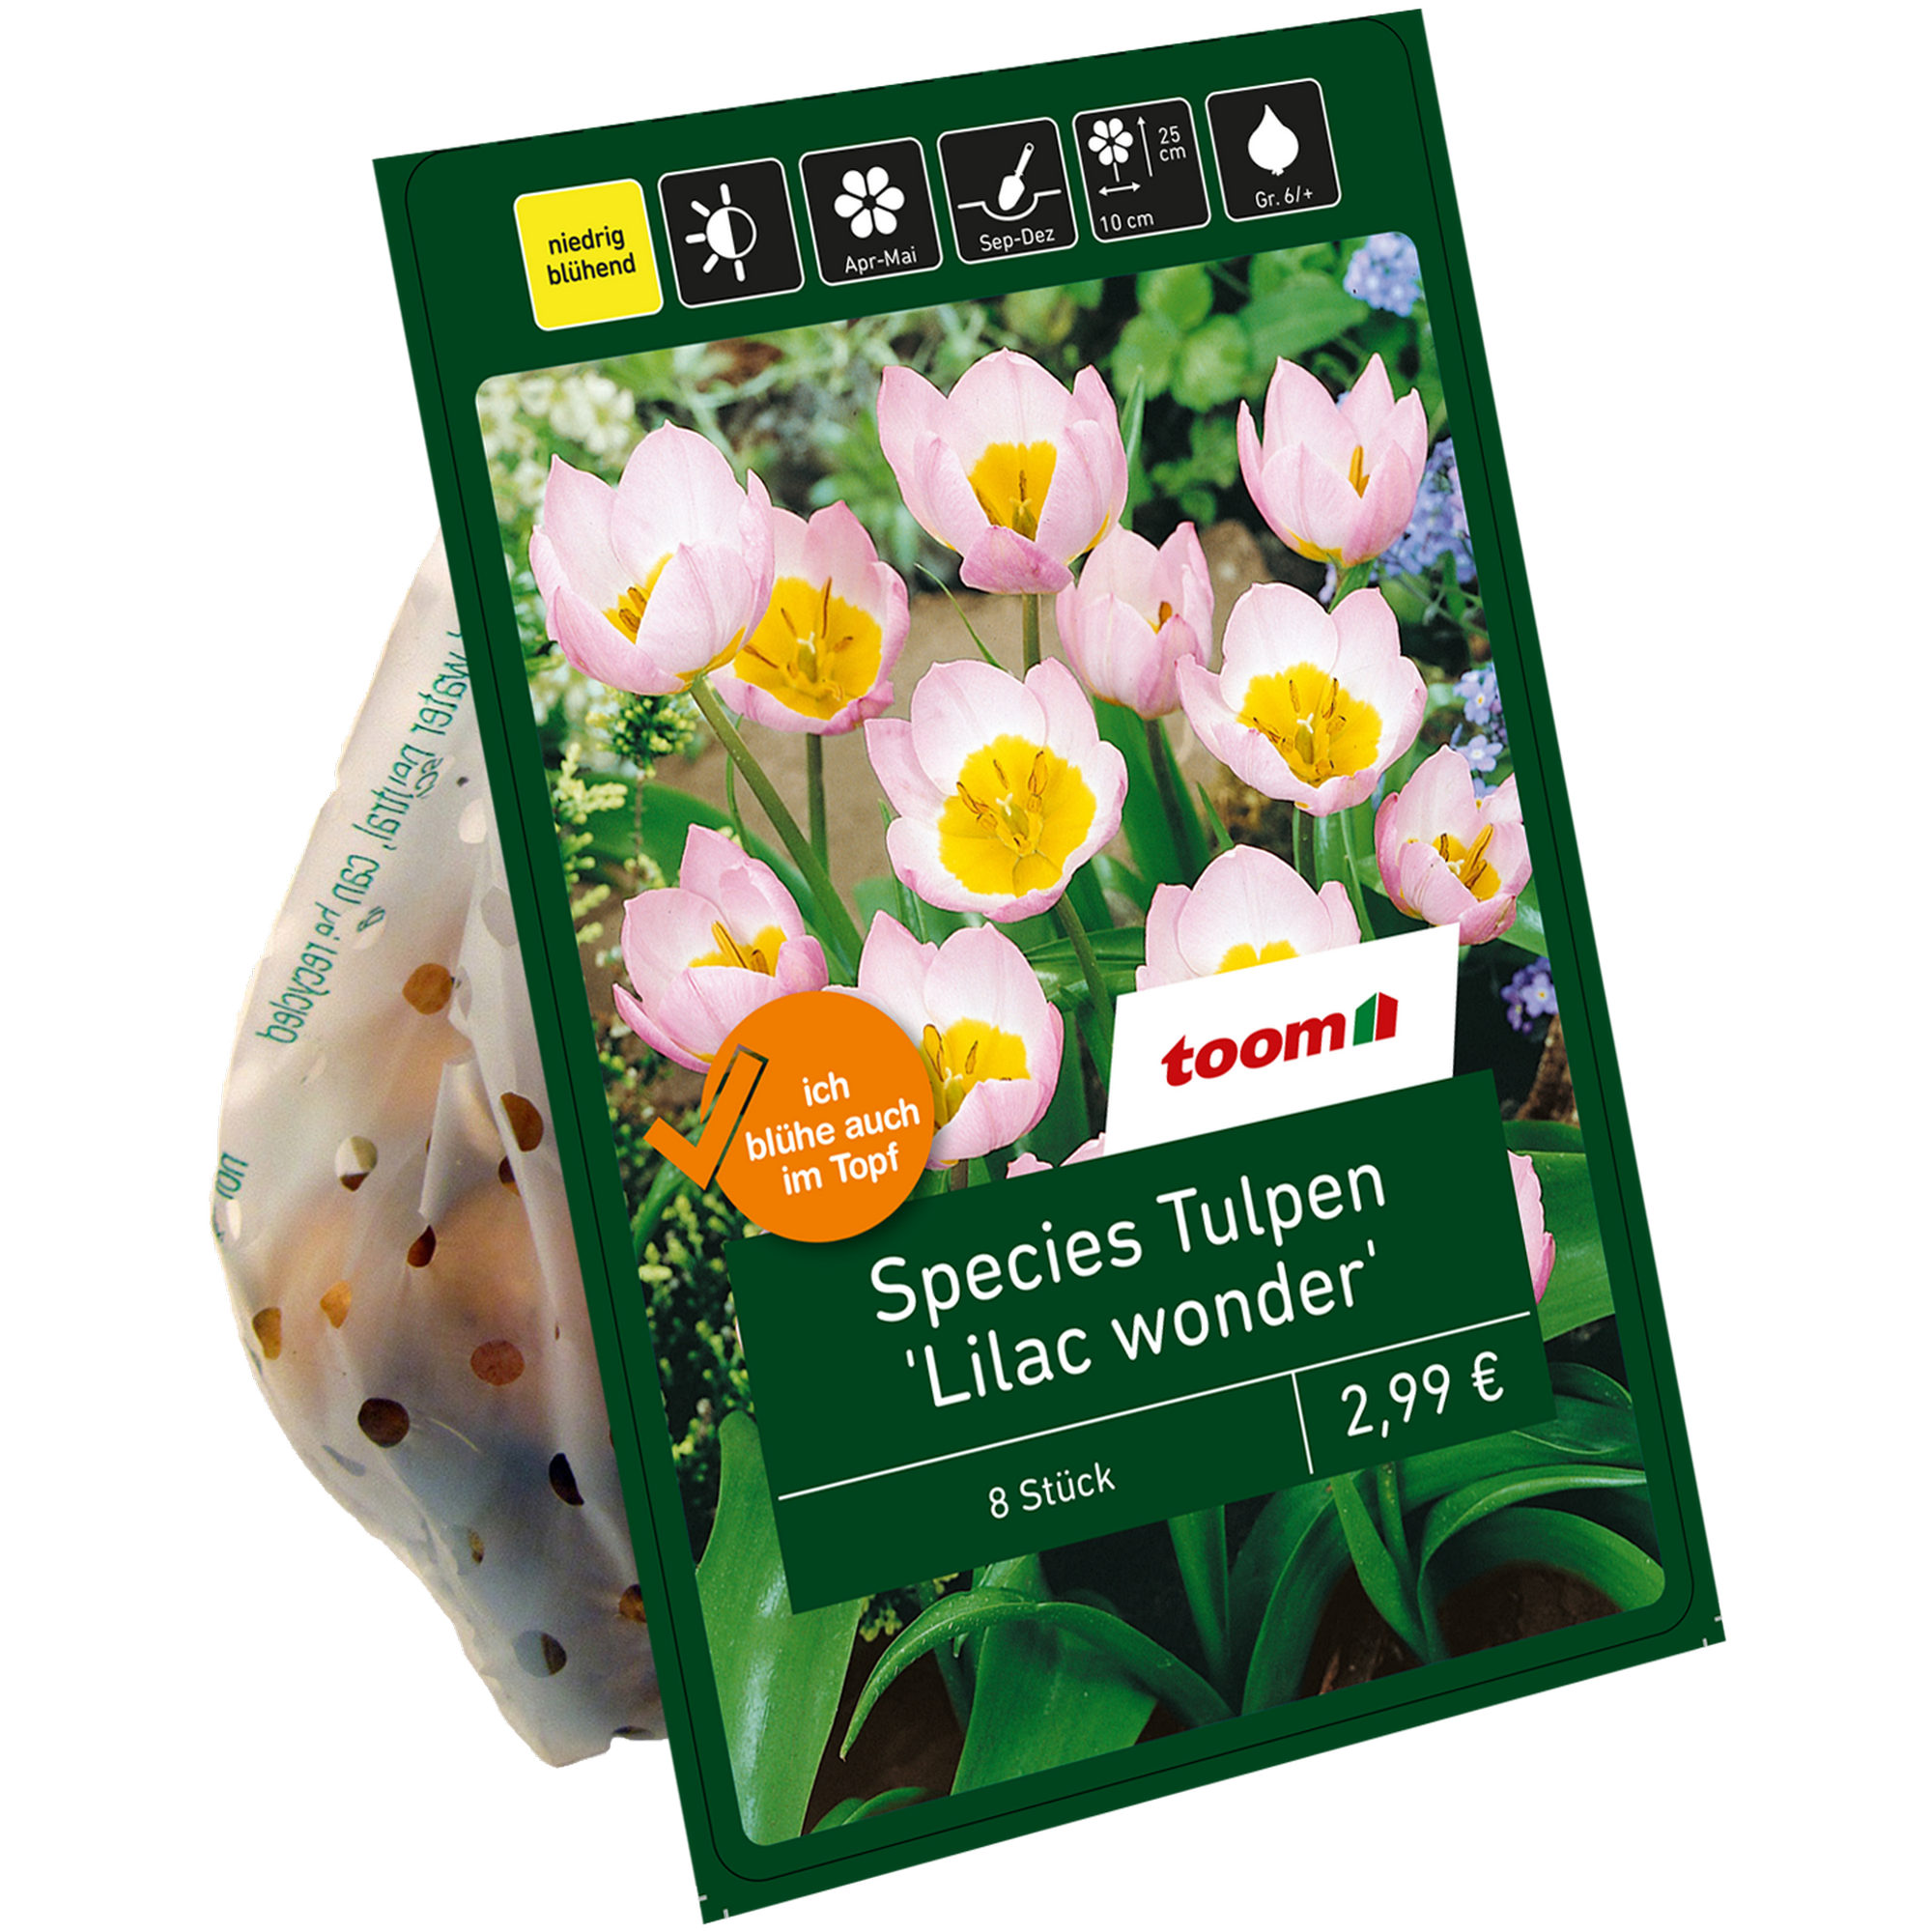 Botanische Tulpen 'Lilac wonder' violett-gelb 8 Zwiebeln + product picture